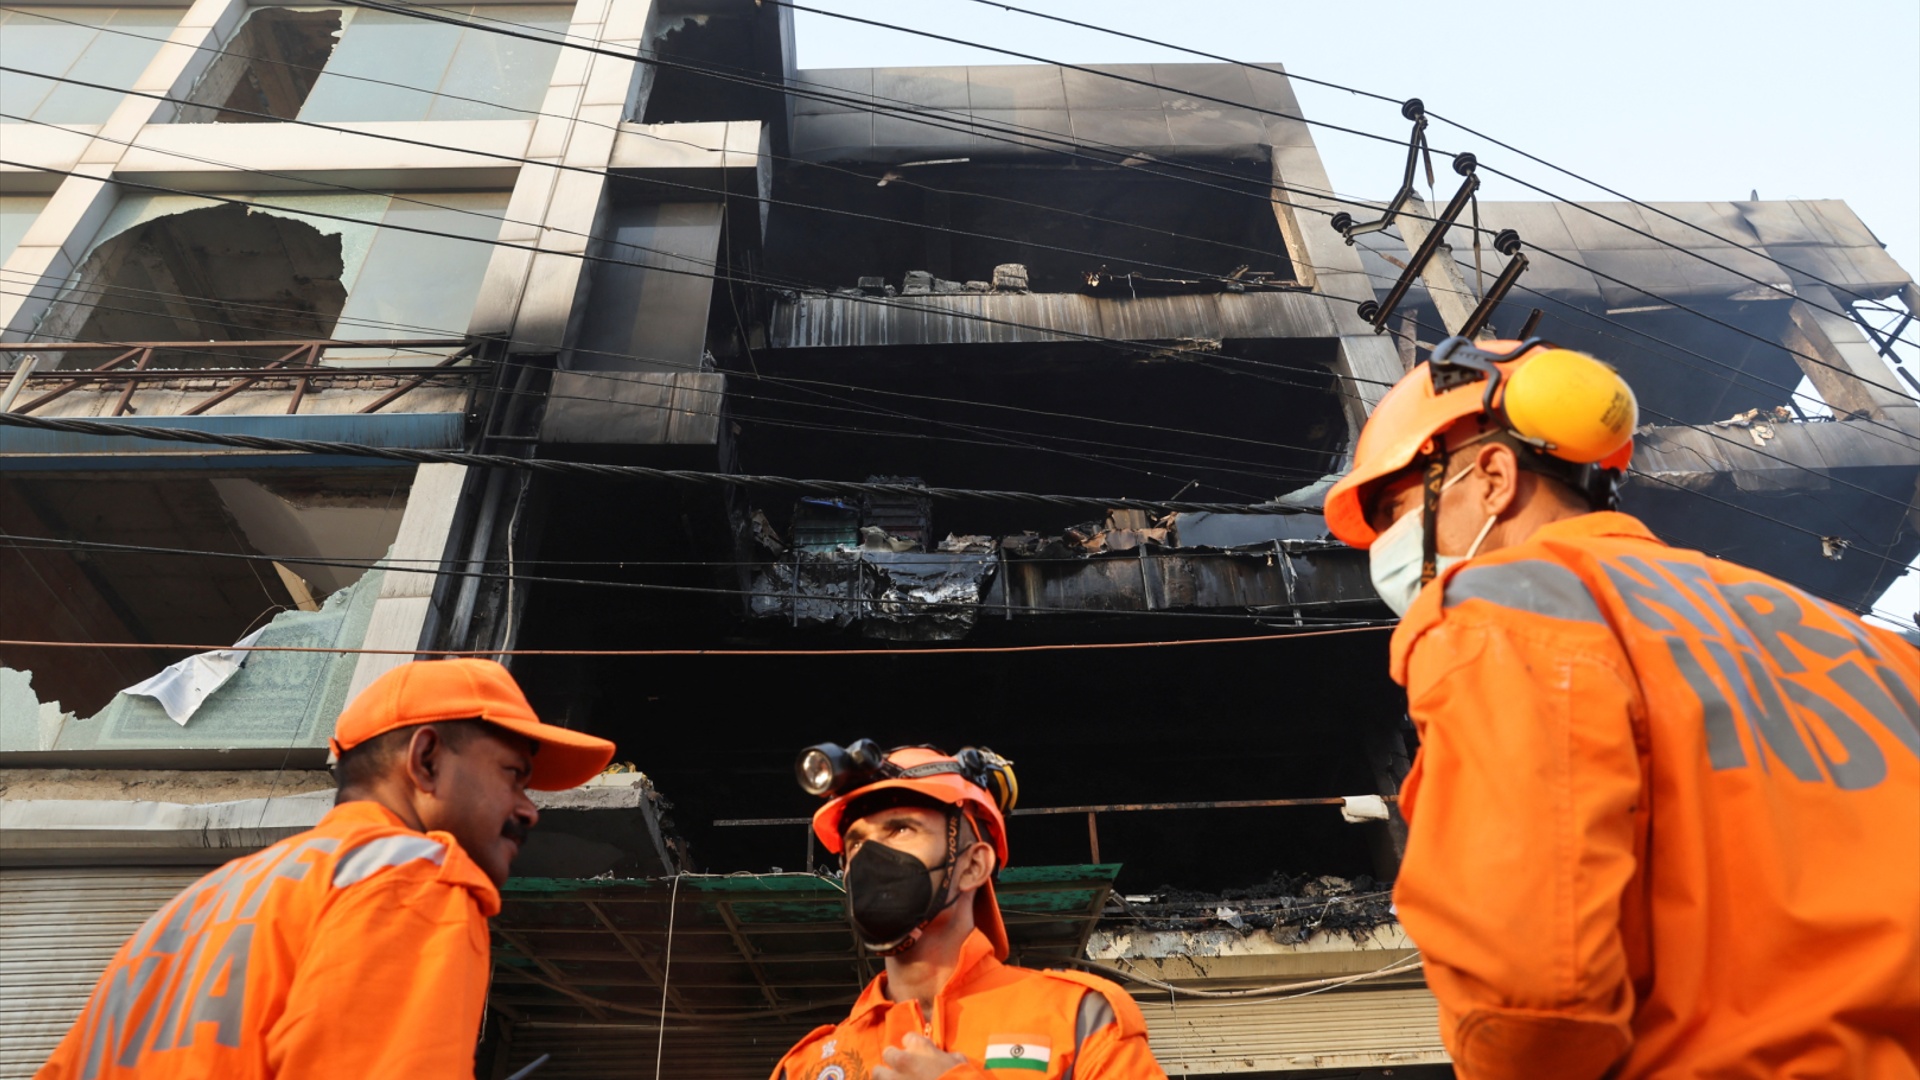 Пожар в Нью-Дели: 27 погибших